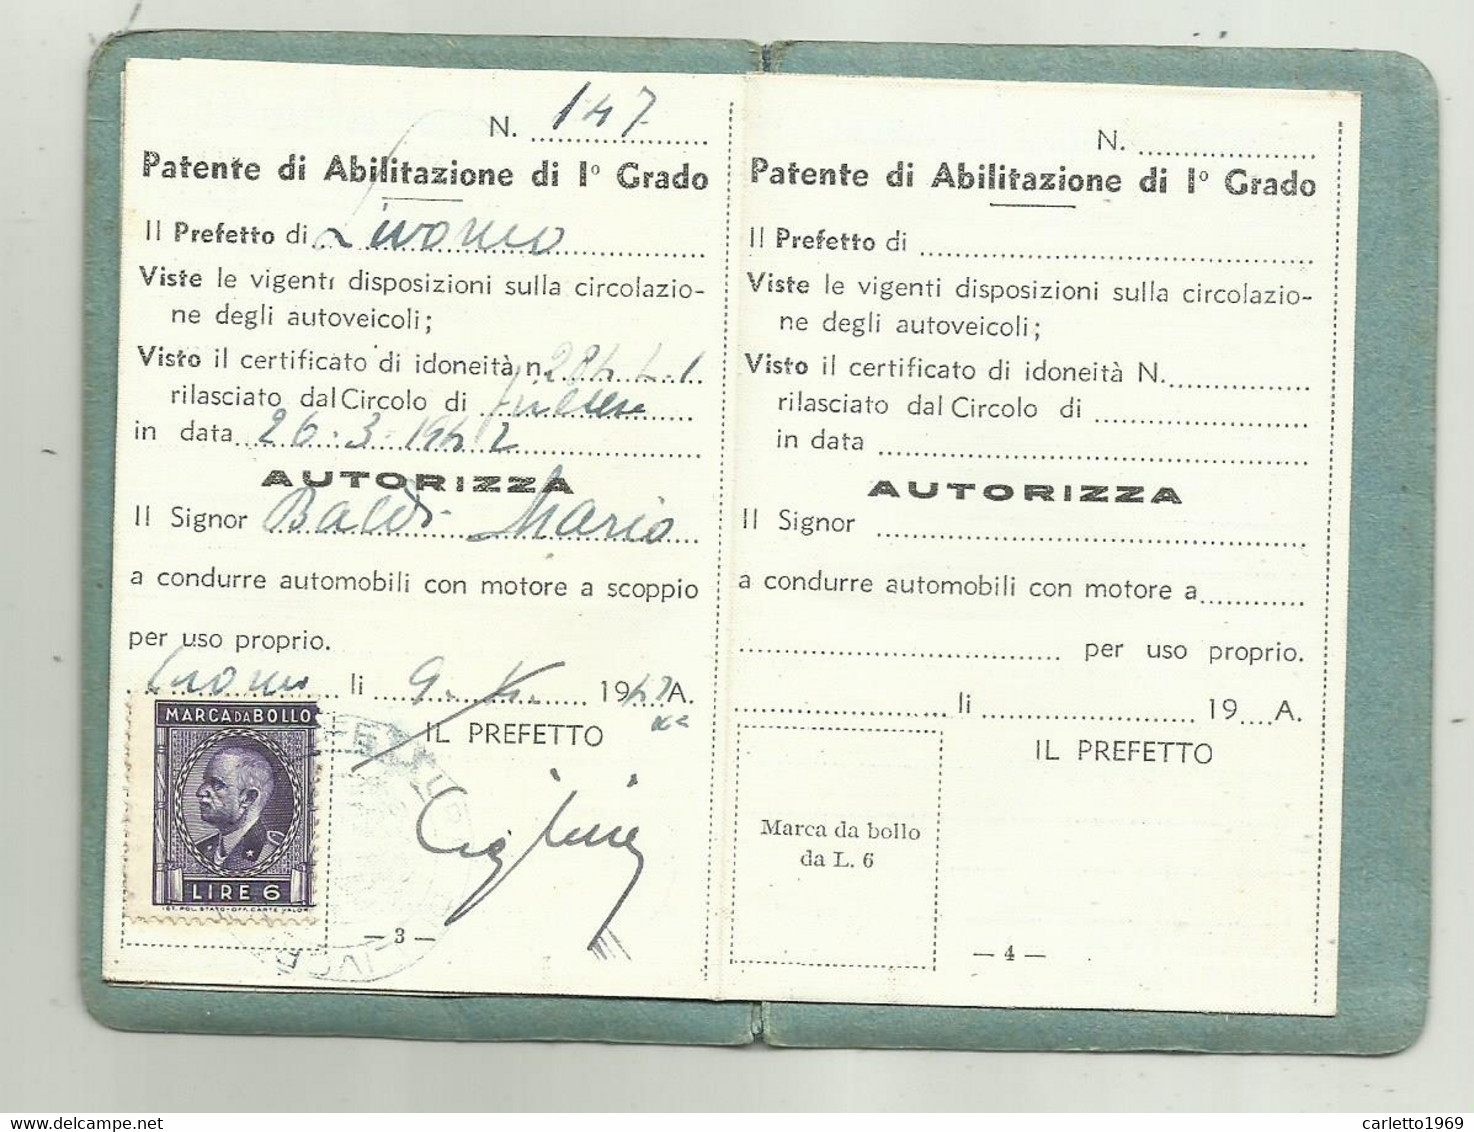 PATENTE DI ABILITAZIONE DI 1 GRADO FIRENZE 1920 - Historical Documents